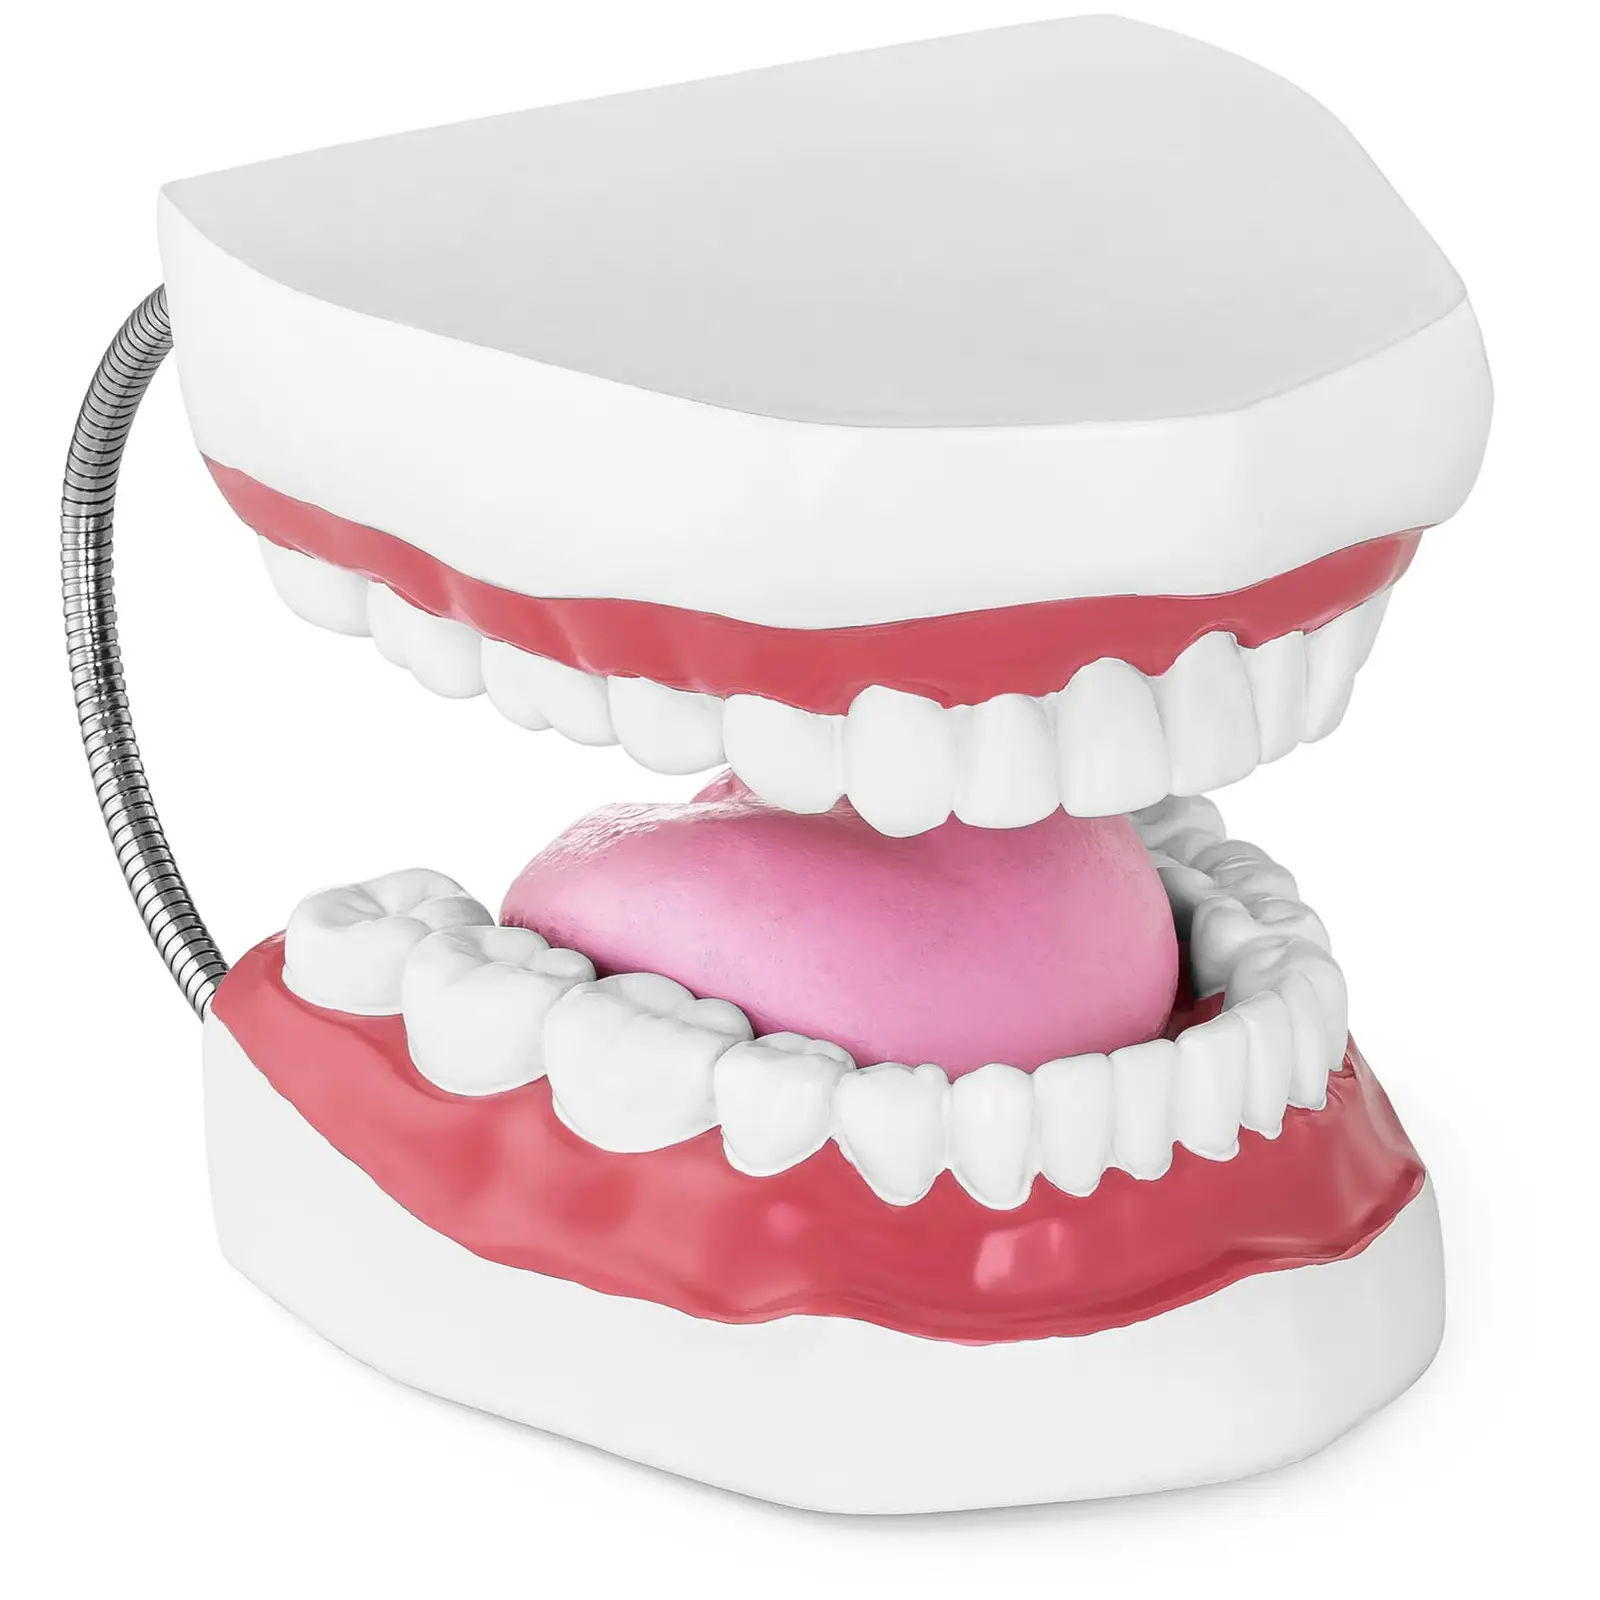 Модел на зъби - Комплект зъби